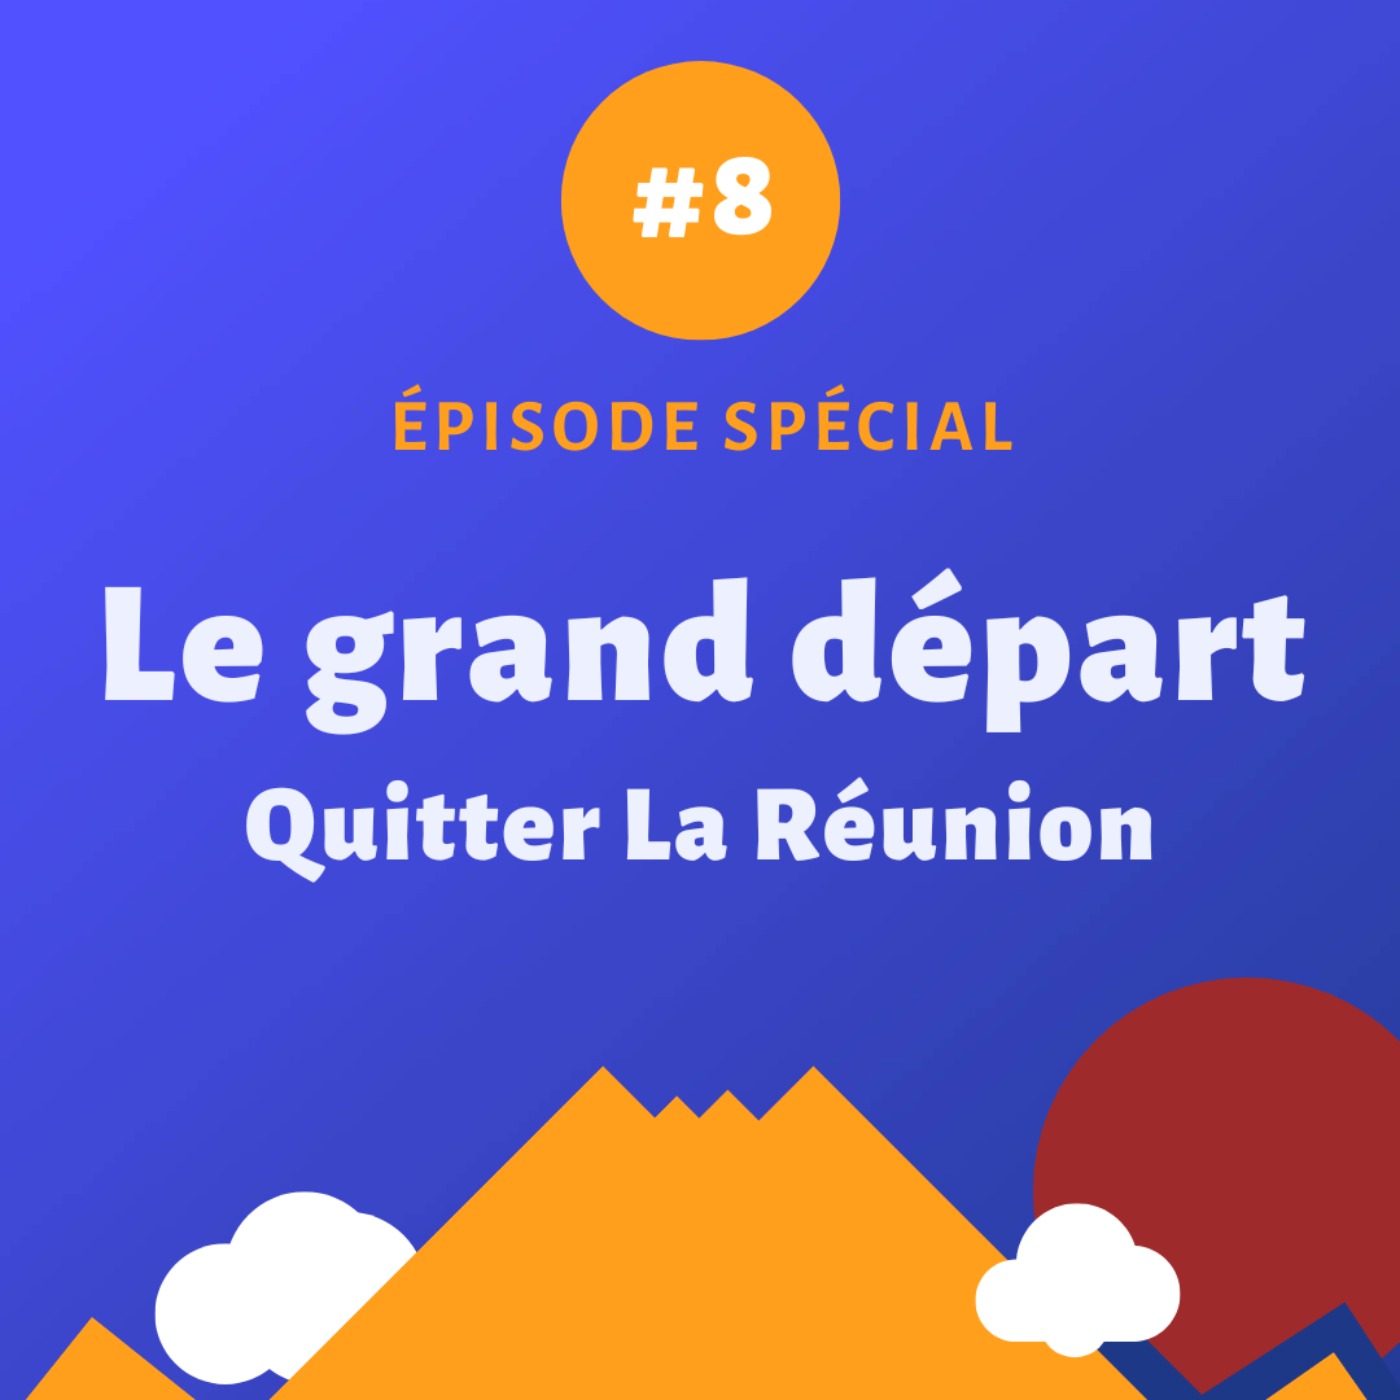 Episode spécial #8 - Le grand départ : Quitter La Réunion